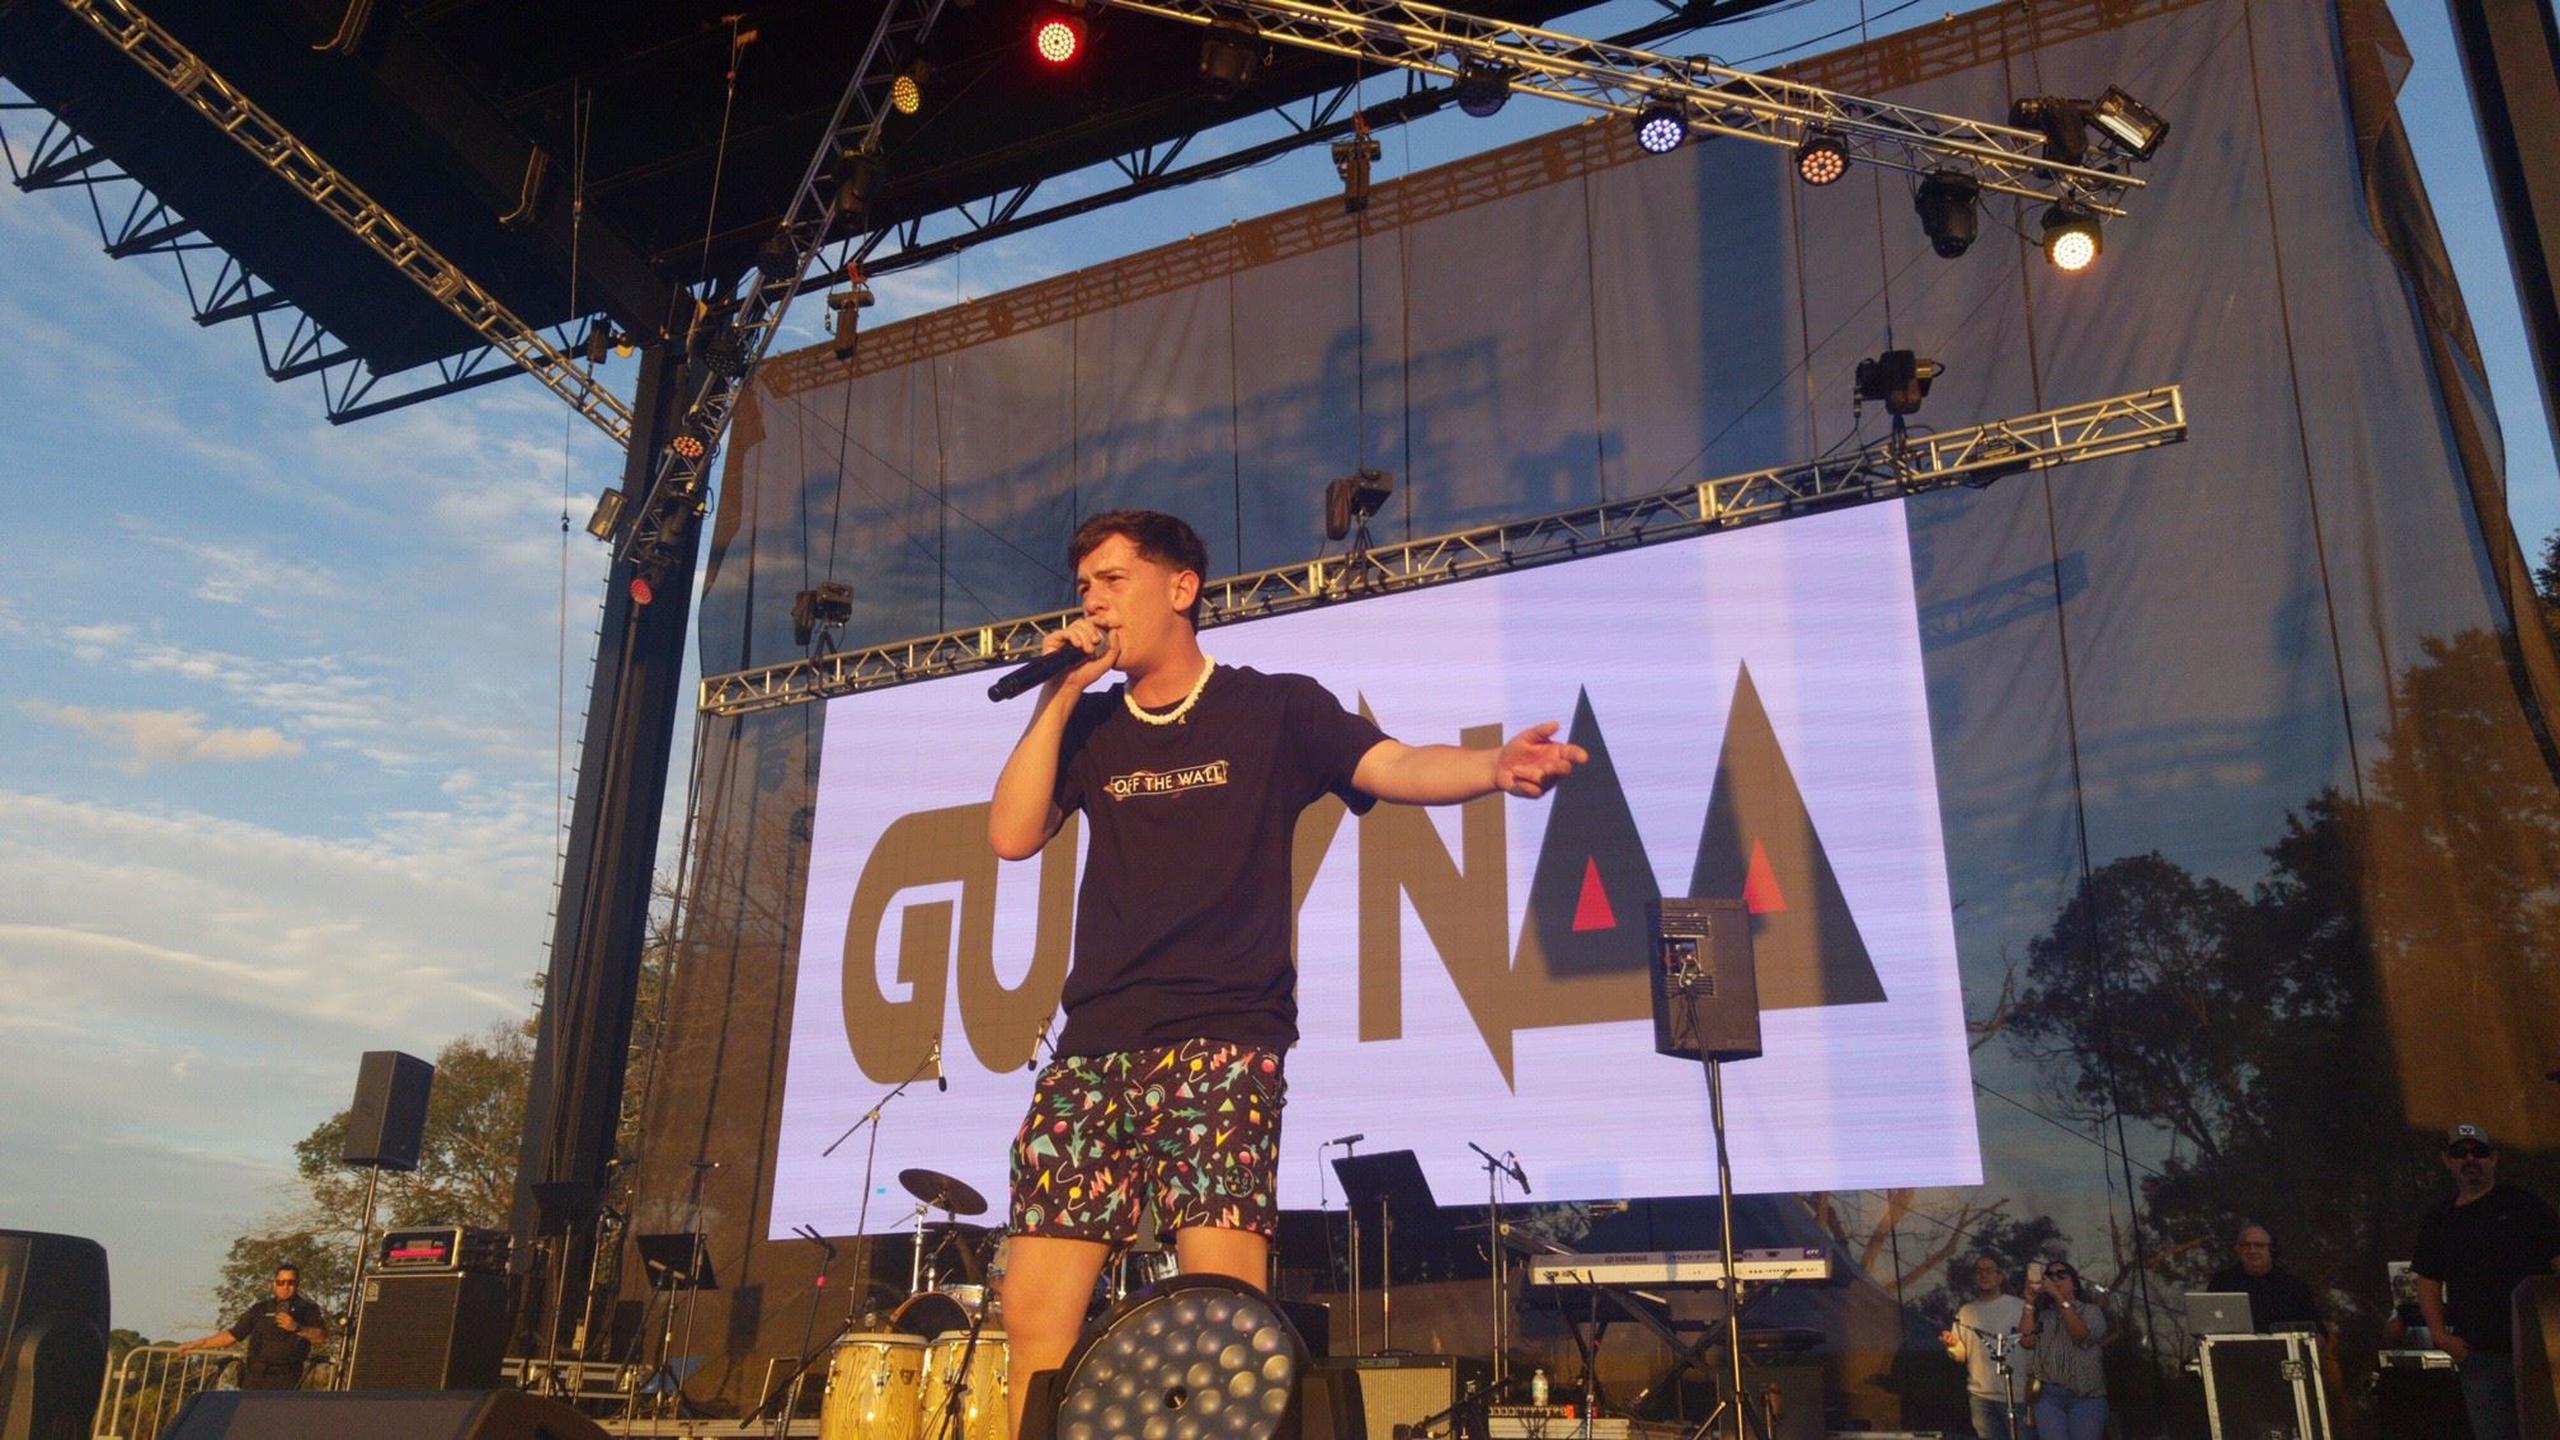 Presentación de Guayna en La Sanse en Orlando 2019. (Suministrada Luis Santiago Arce)